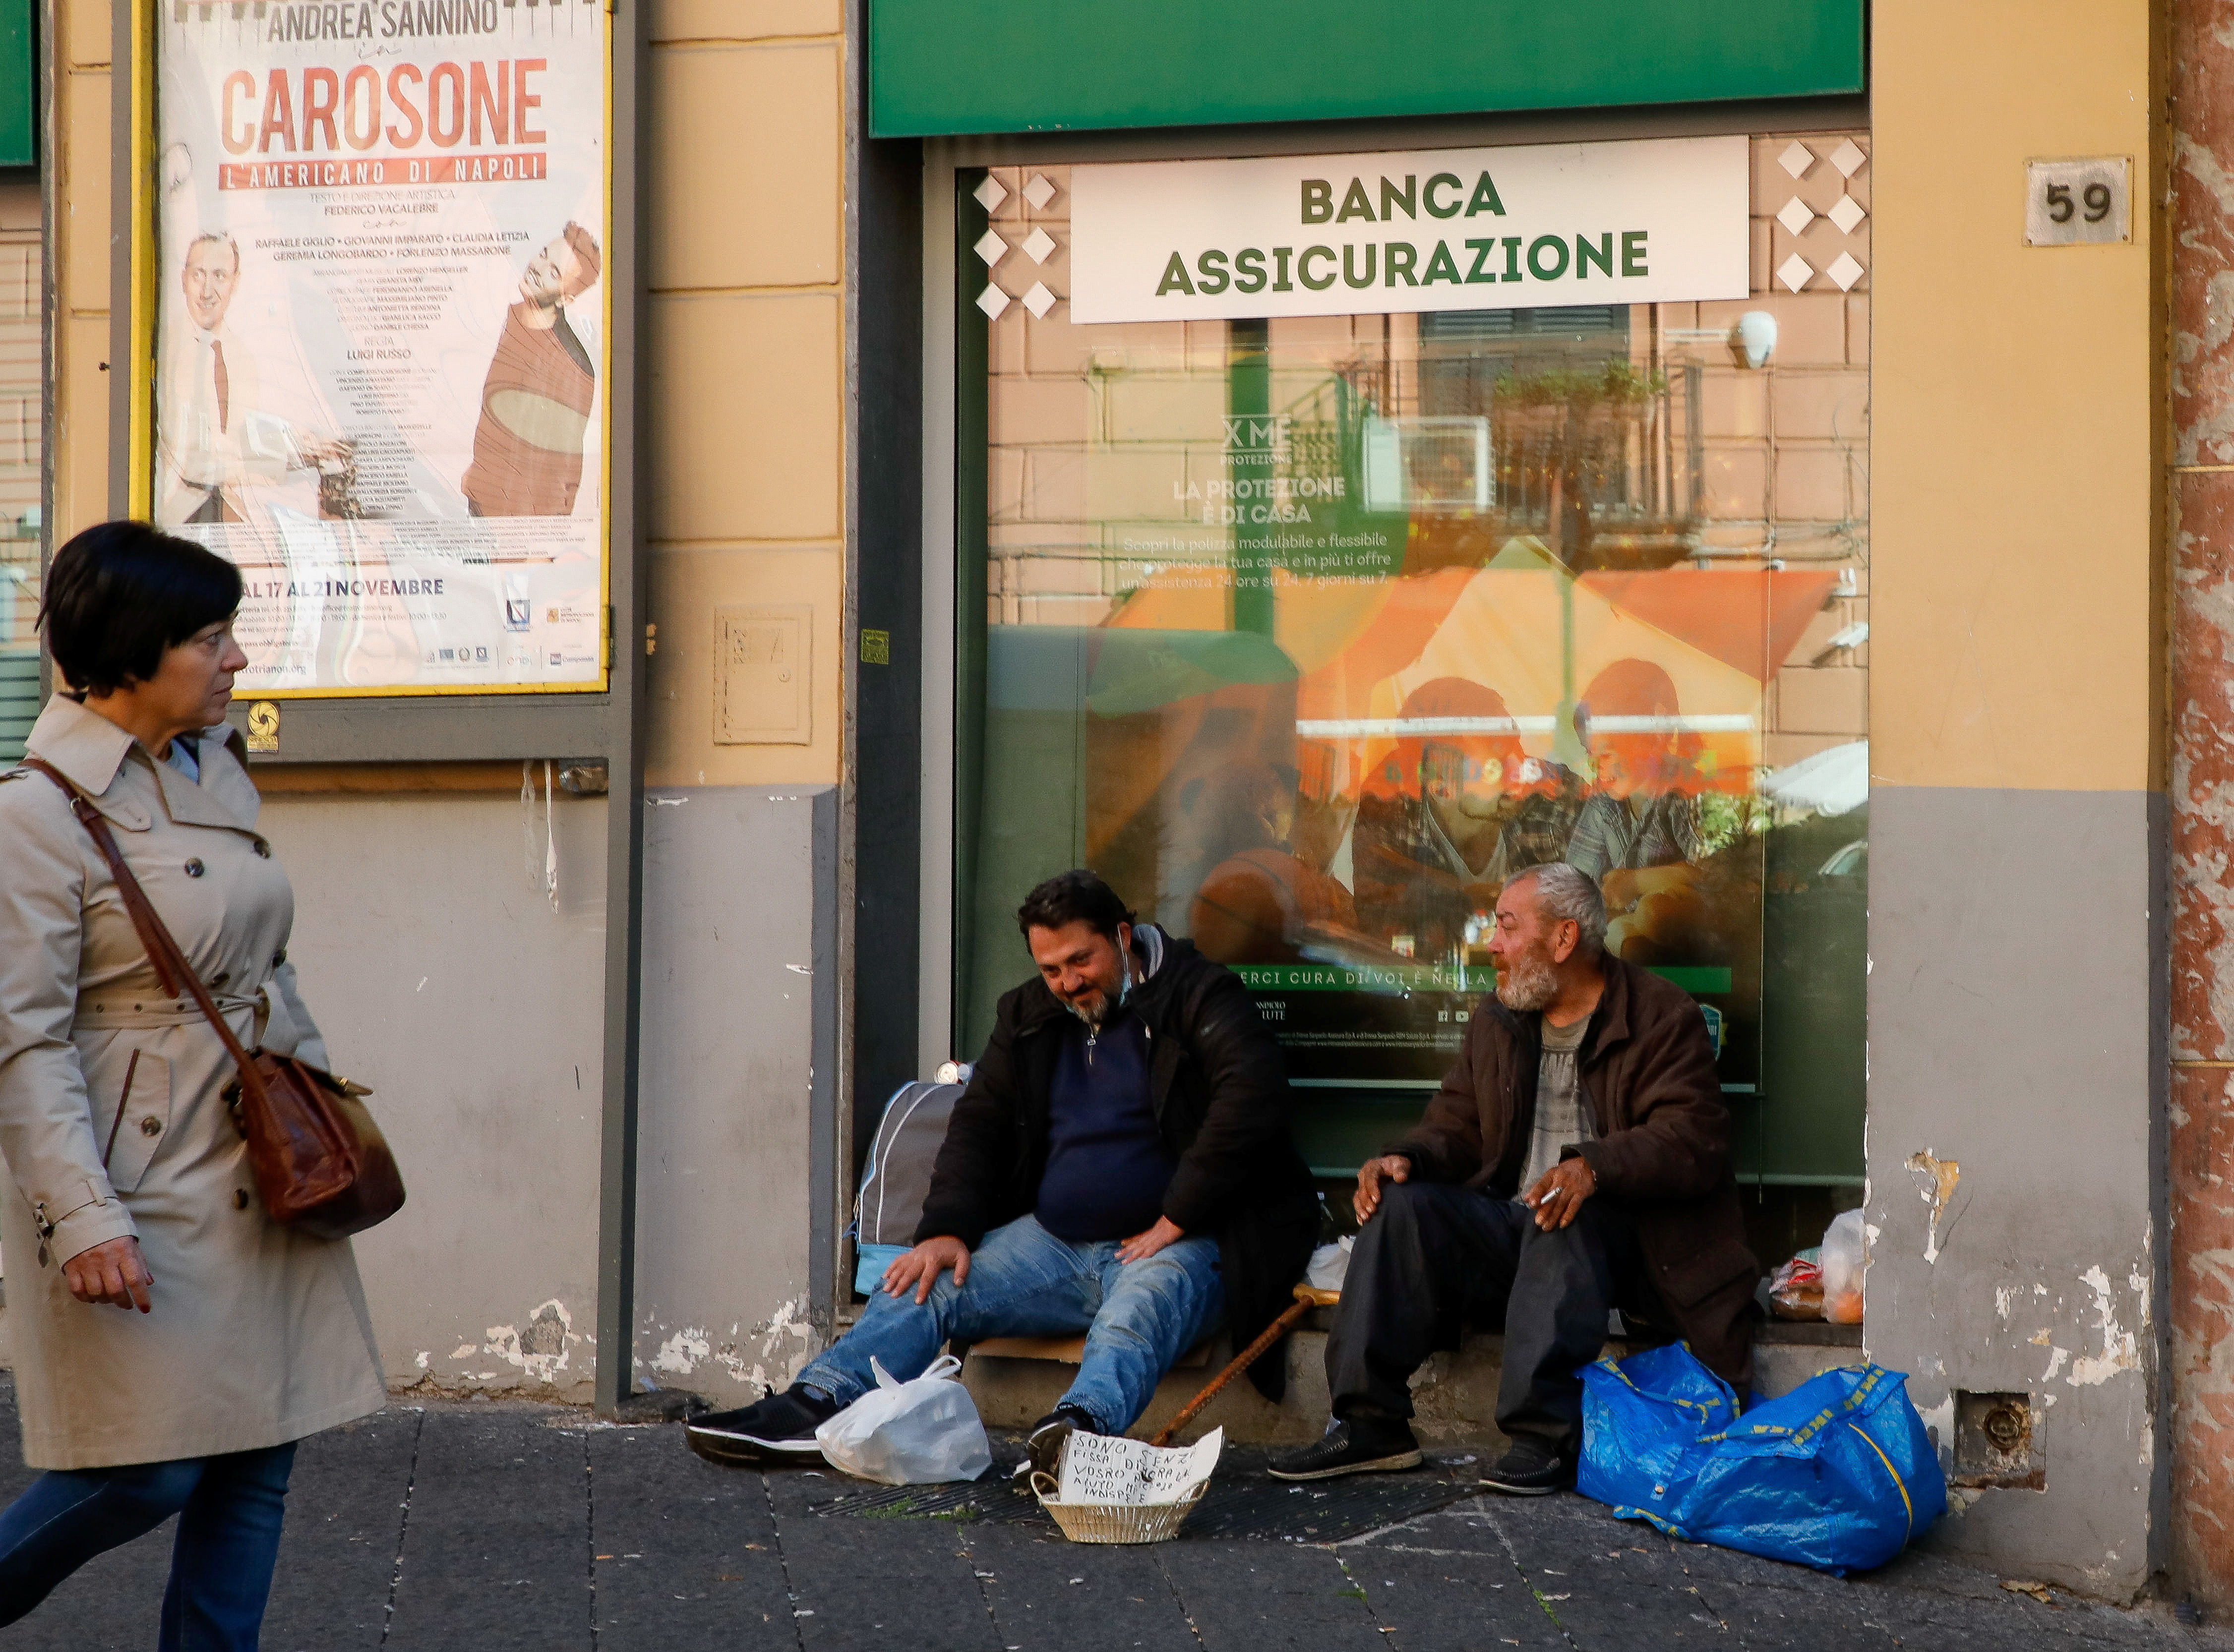 Men beg on the street in Naples